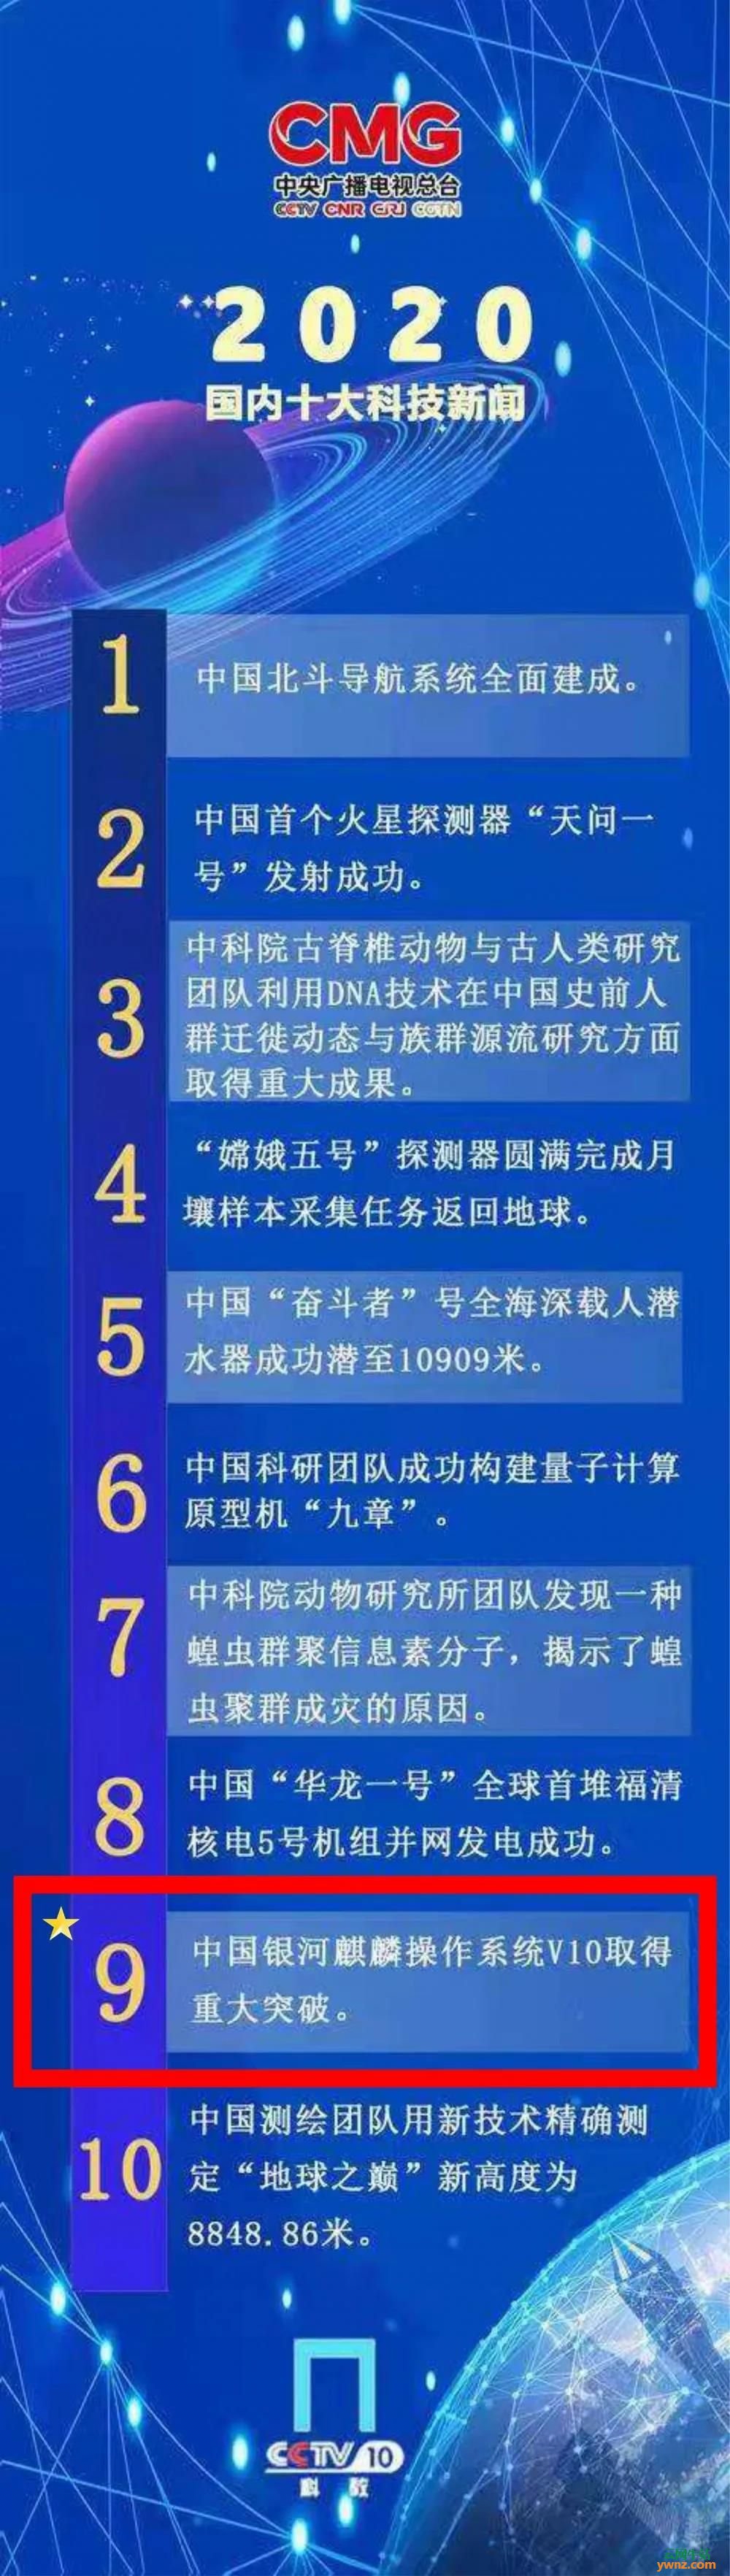 中国银河麒麟操作系统V10取得重大突破上榜2020国内十大科技新闻